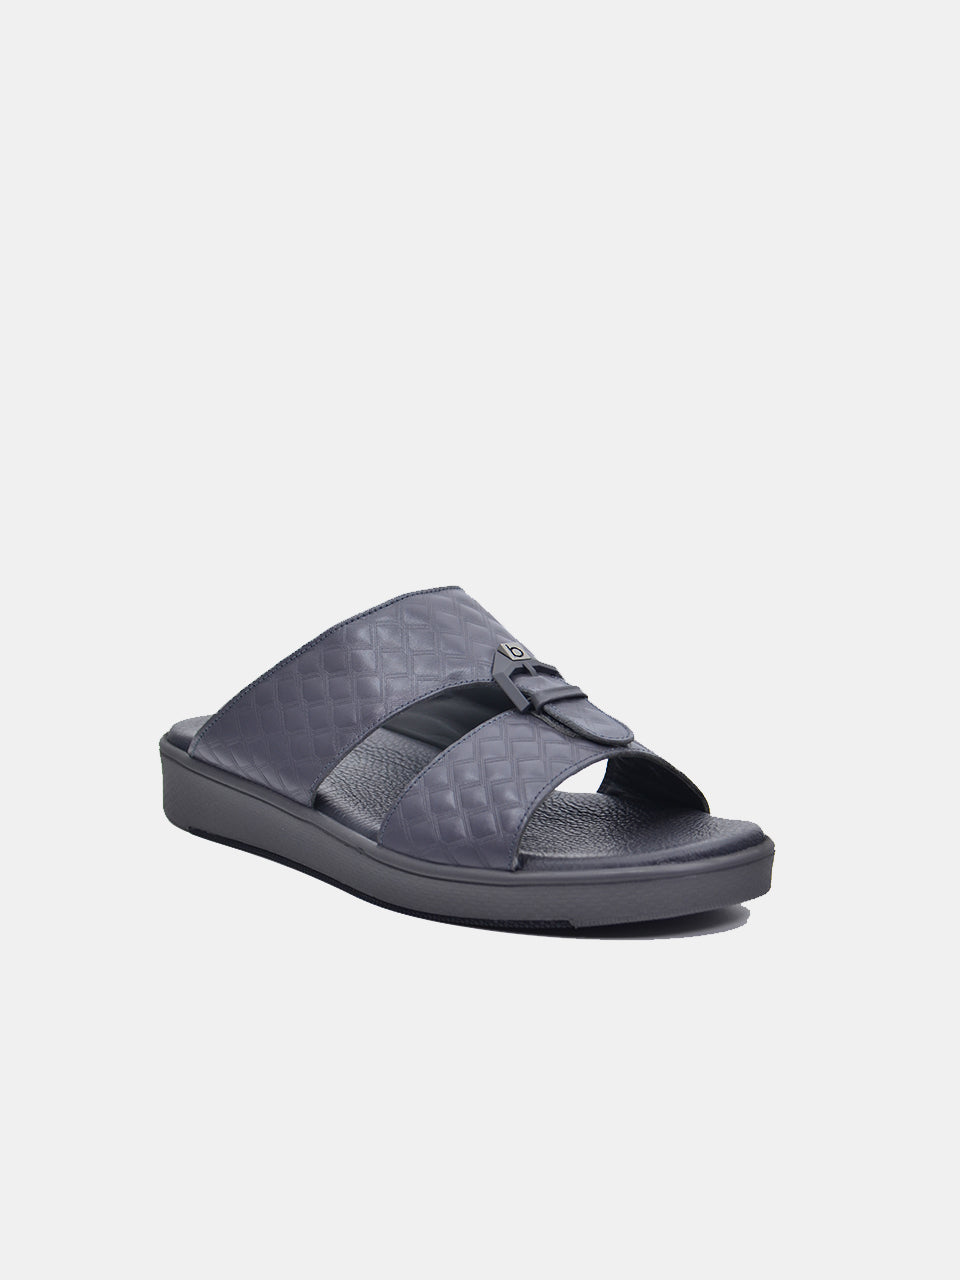 Barjeel Uno B-09 Boys Arabic Sandals #color_Grey